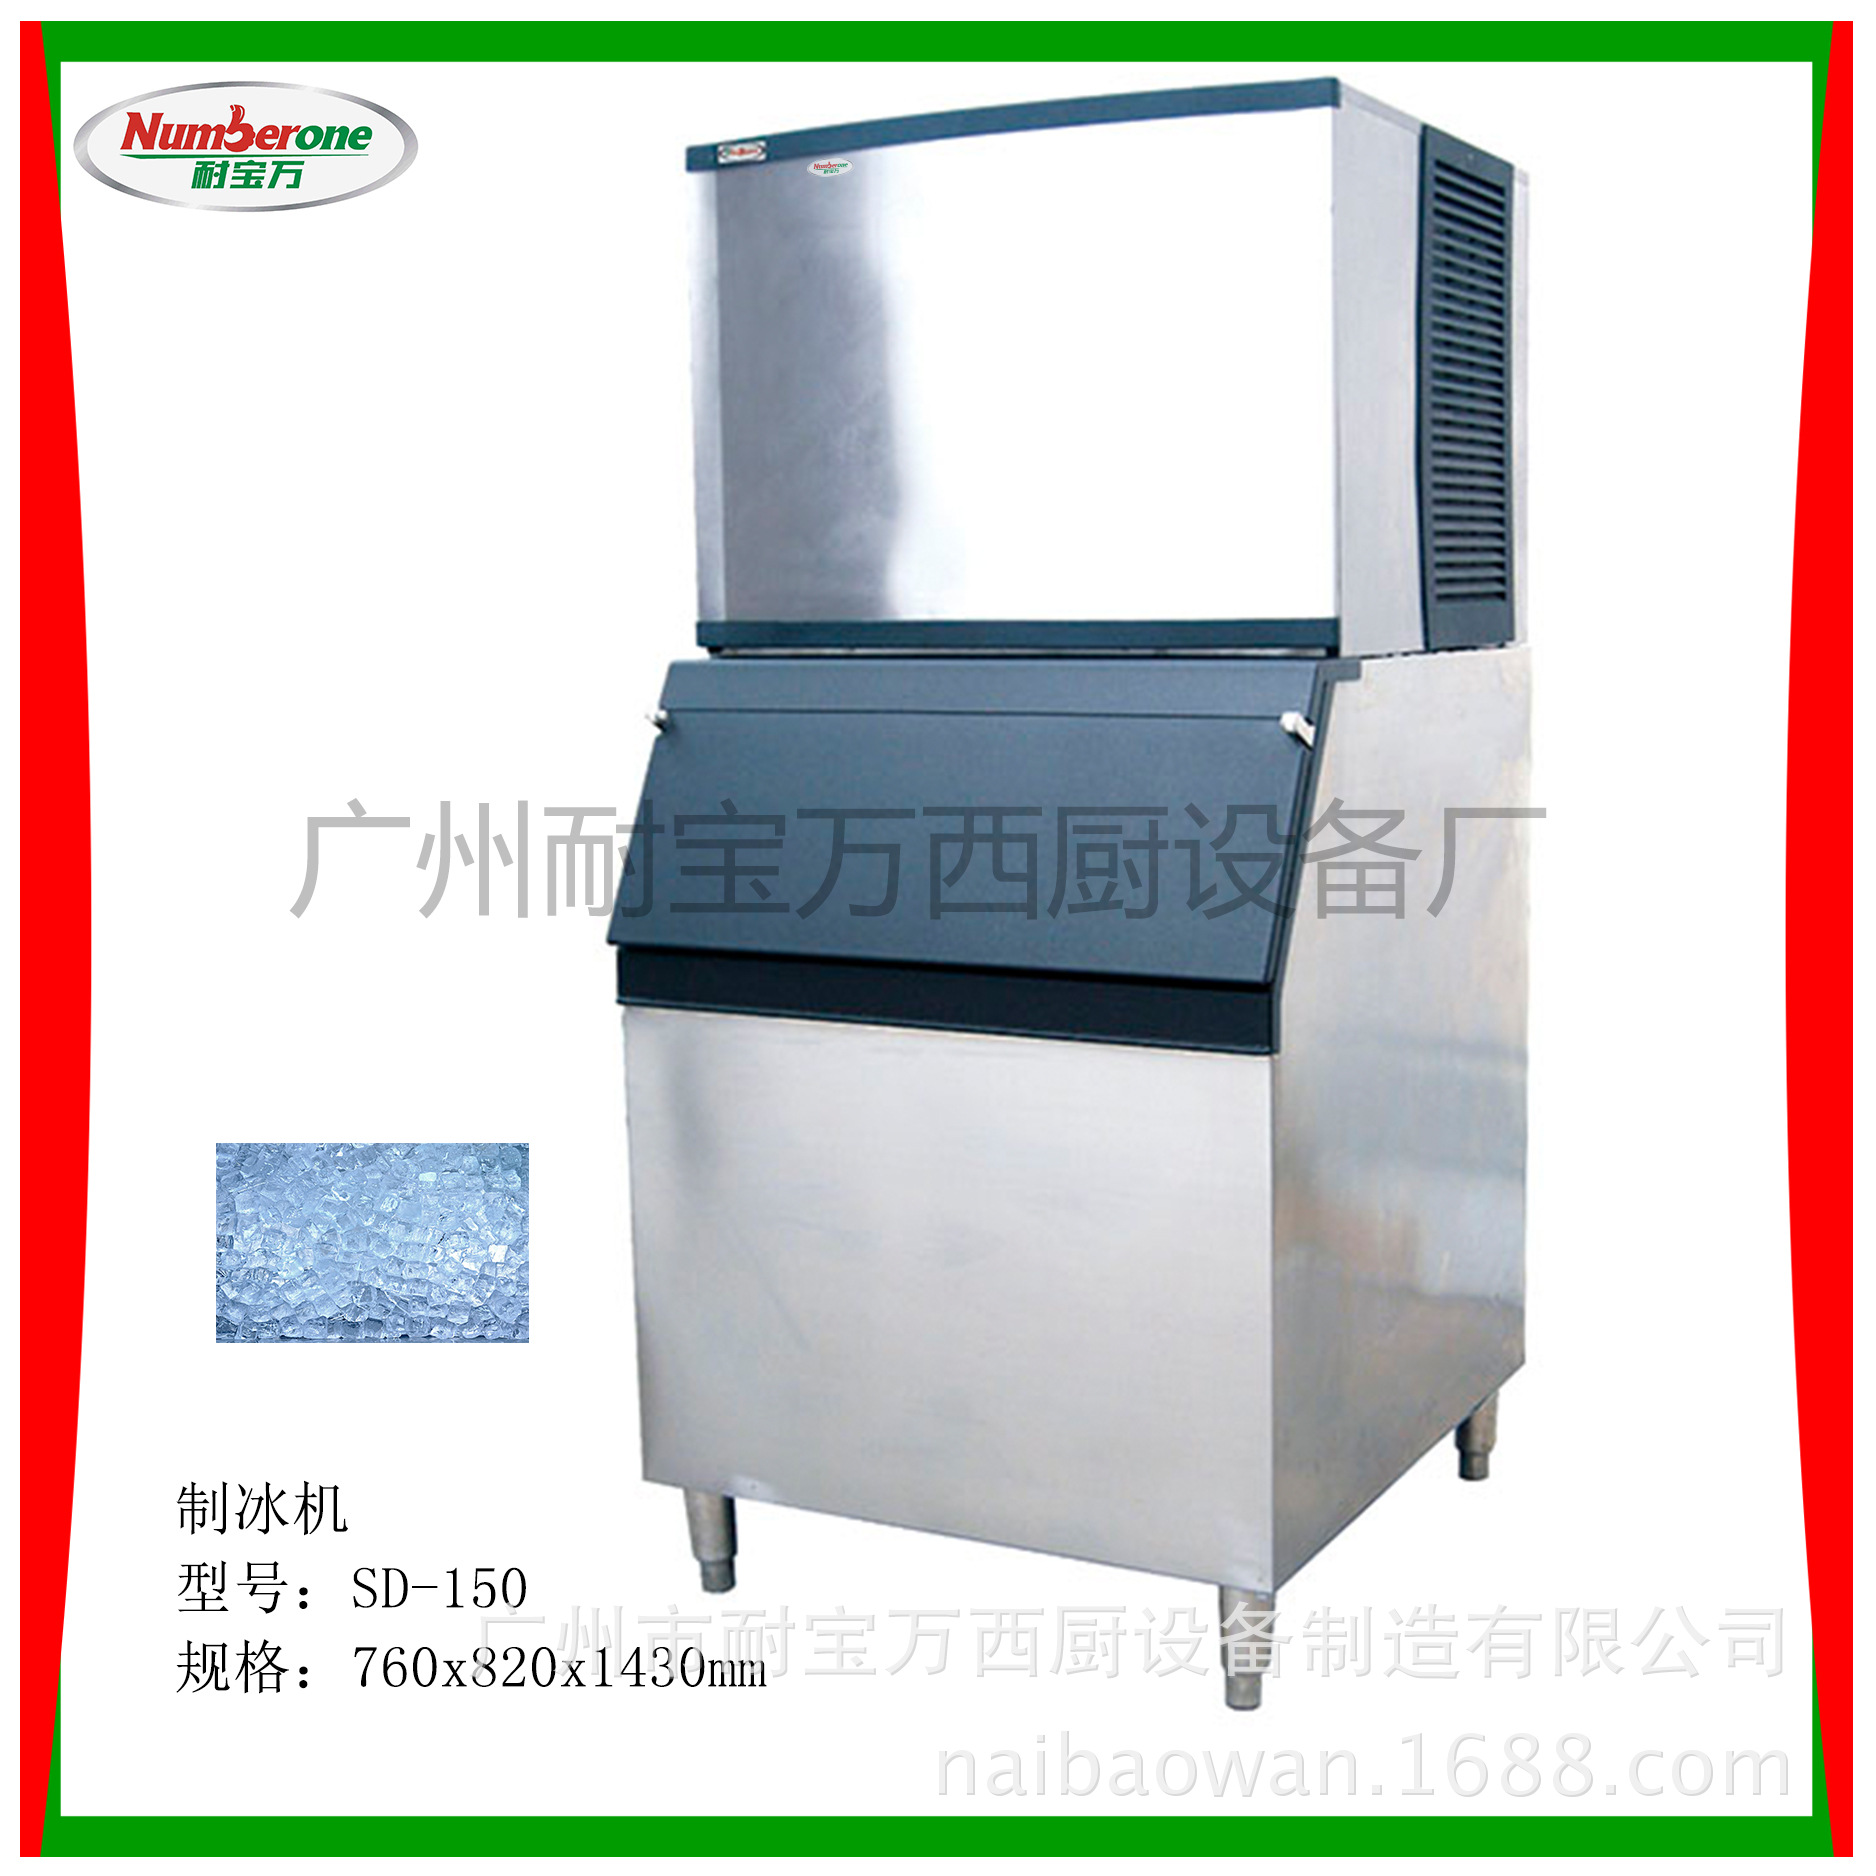 制冰机 方冰机 商用制冰机 冰块机 厂家直销 西厨设备